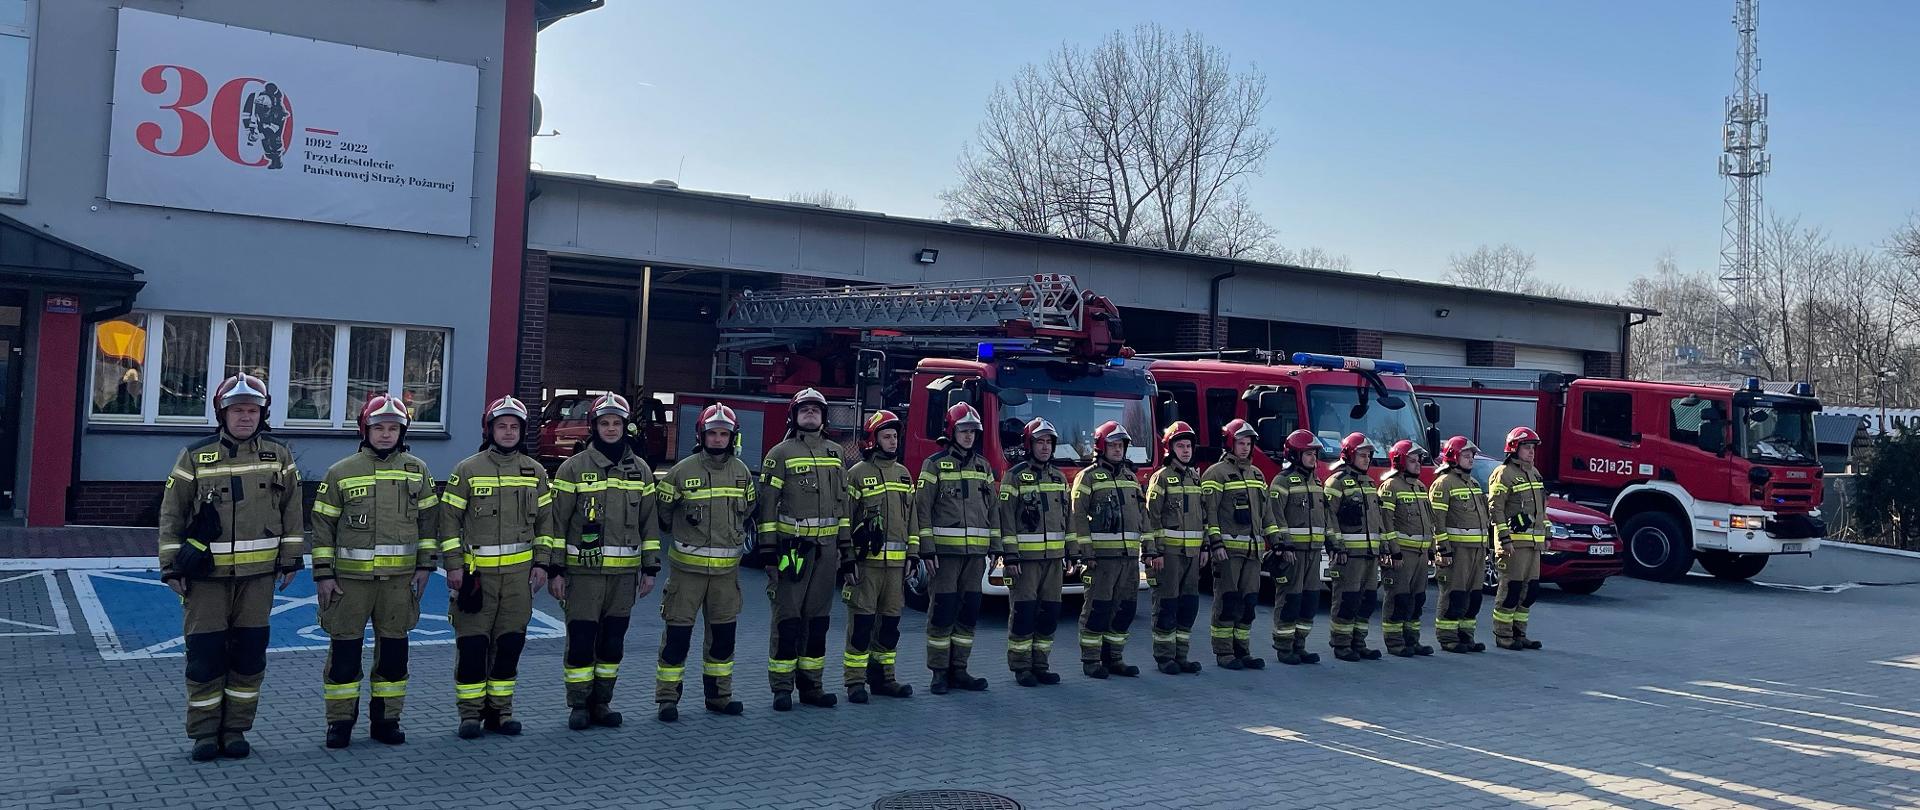 Zdjęcie przedstawia strażaków stojących w szeregu przed budynkiem Komendy Miejskiej Państwowej Straży Pożarnej w Świętochłowicach, w tle samochody pożarnicze.